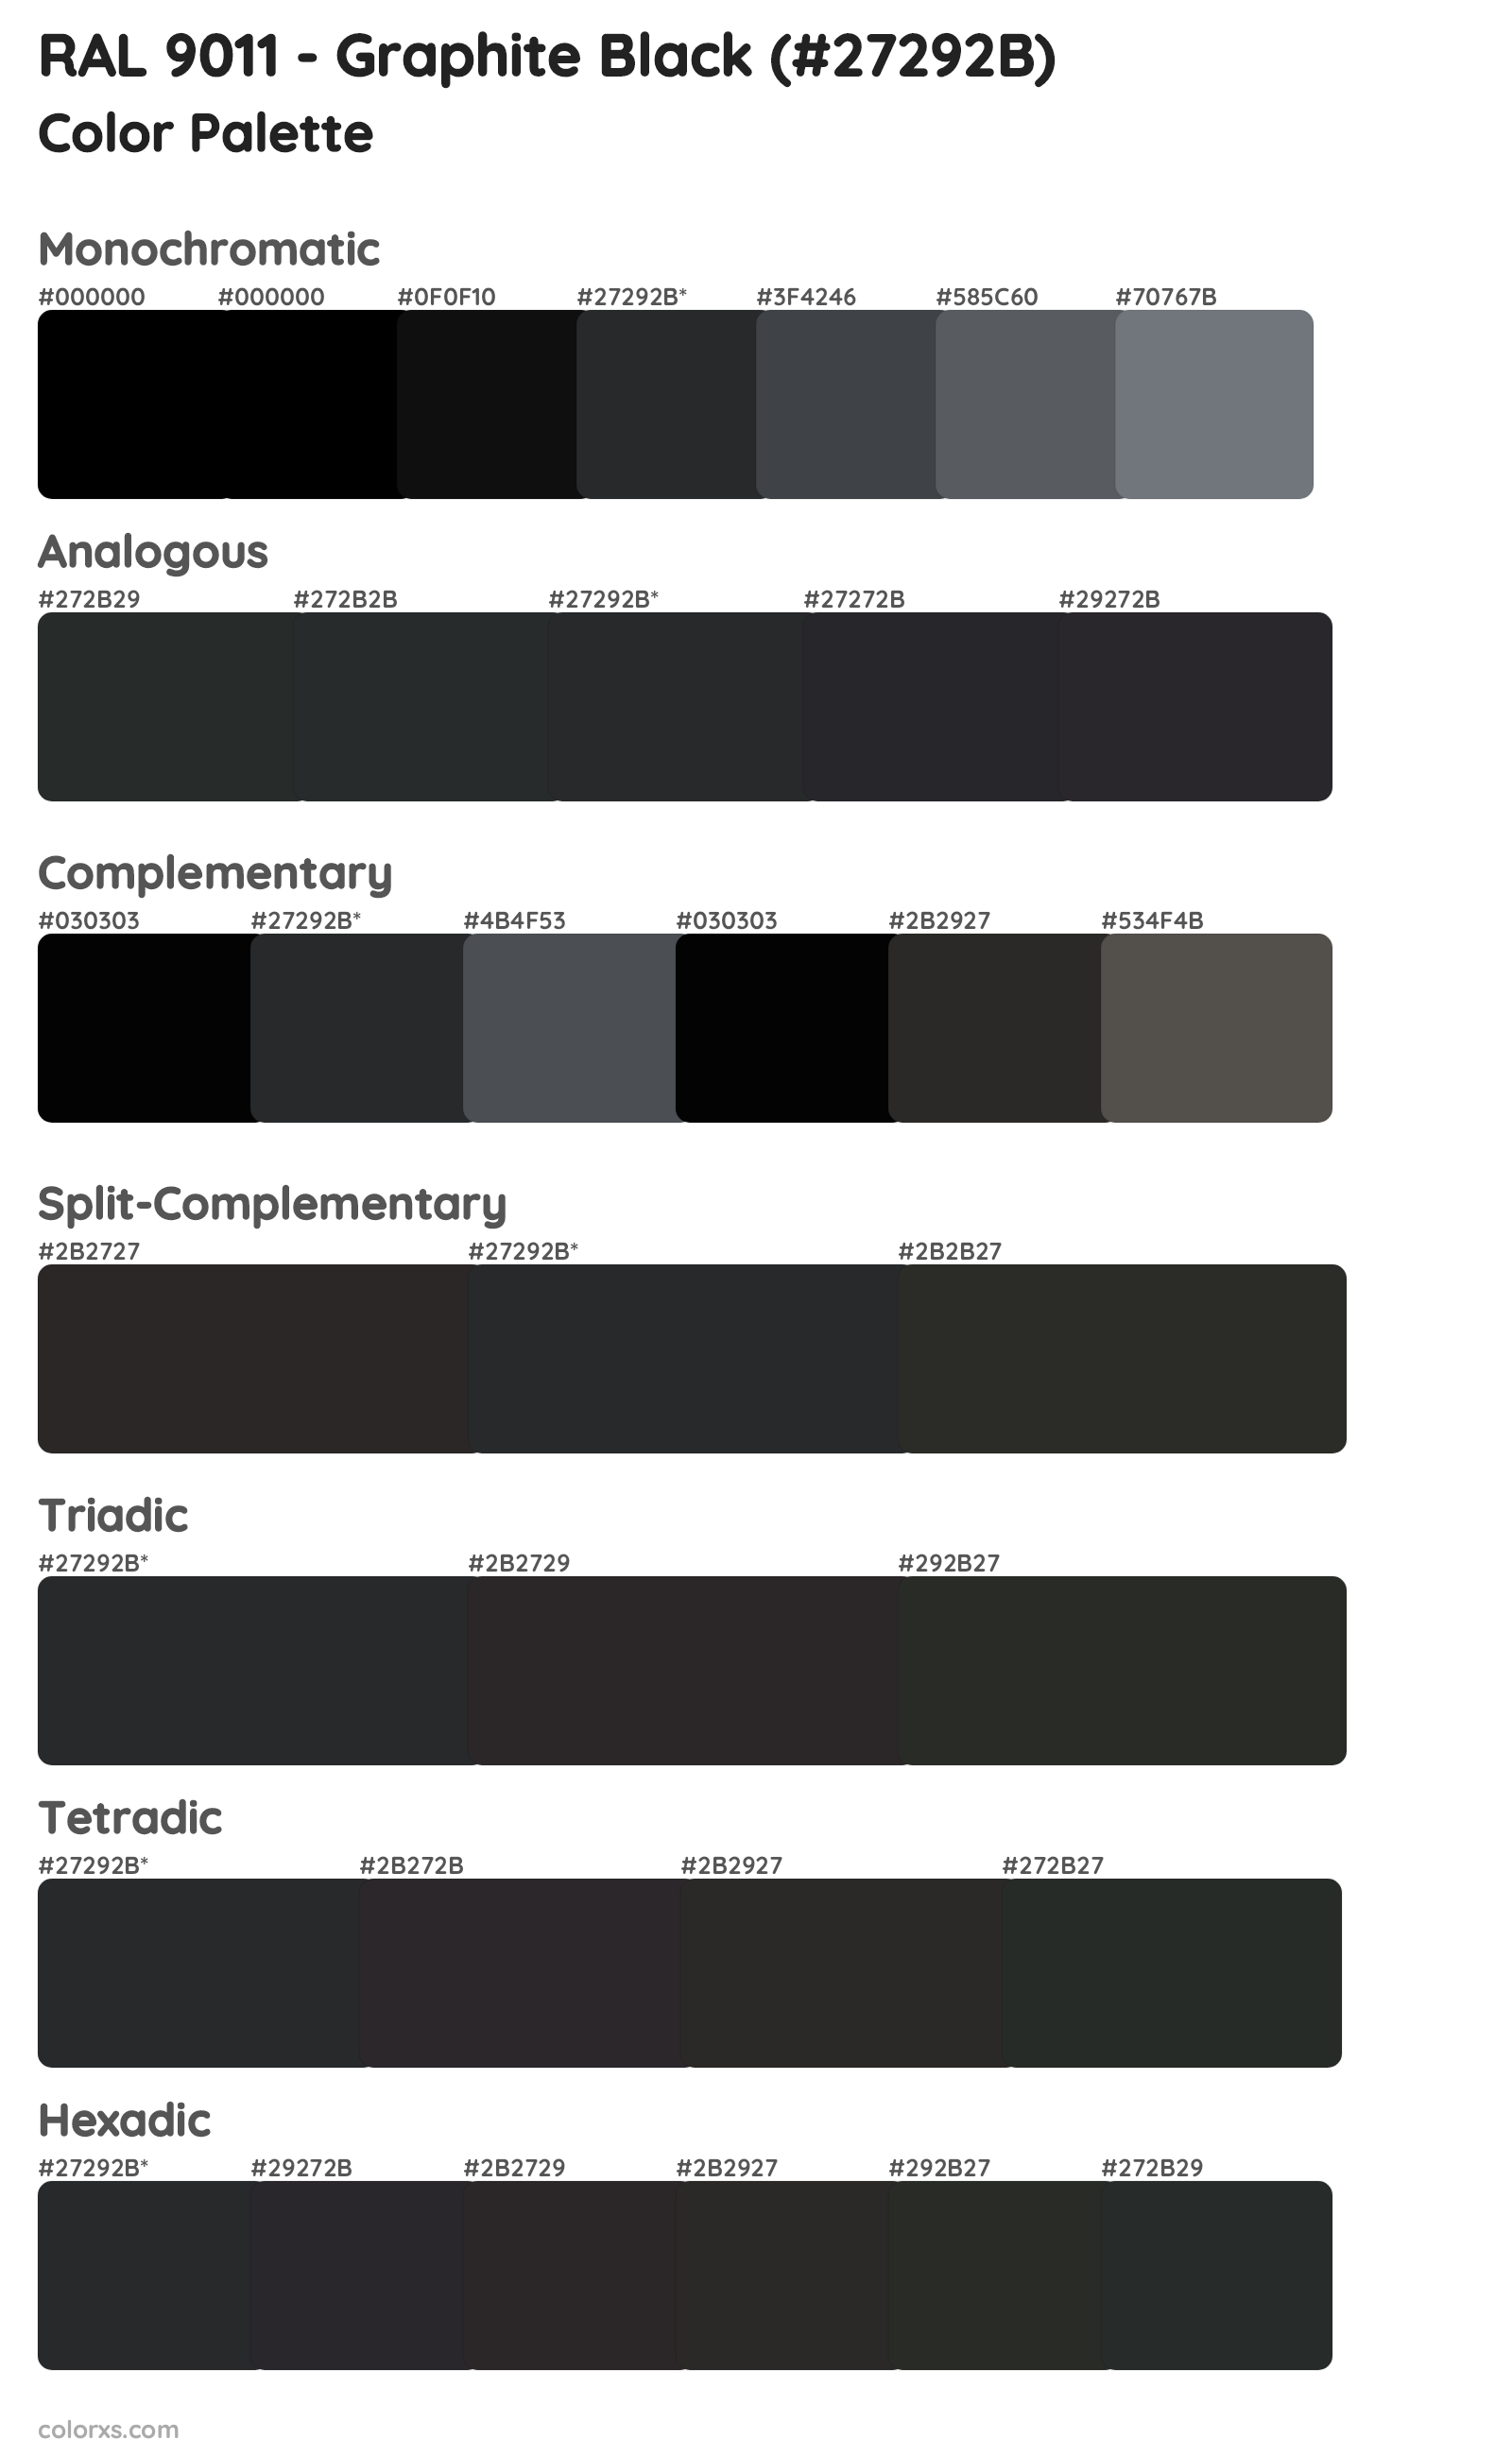 RAL 9011 - Graphite Black Color Scheme Palettes